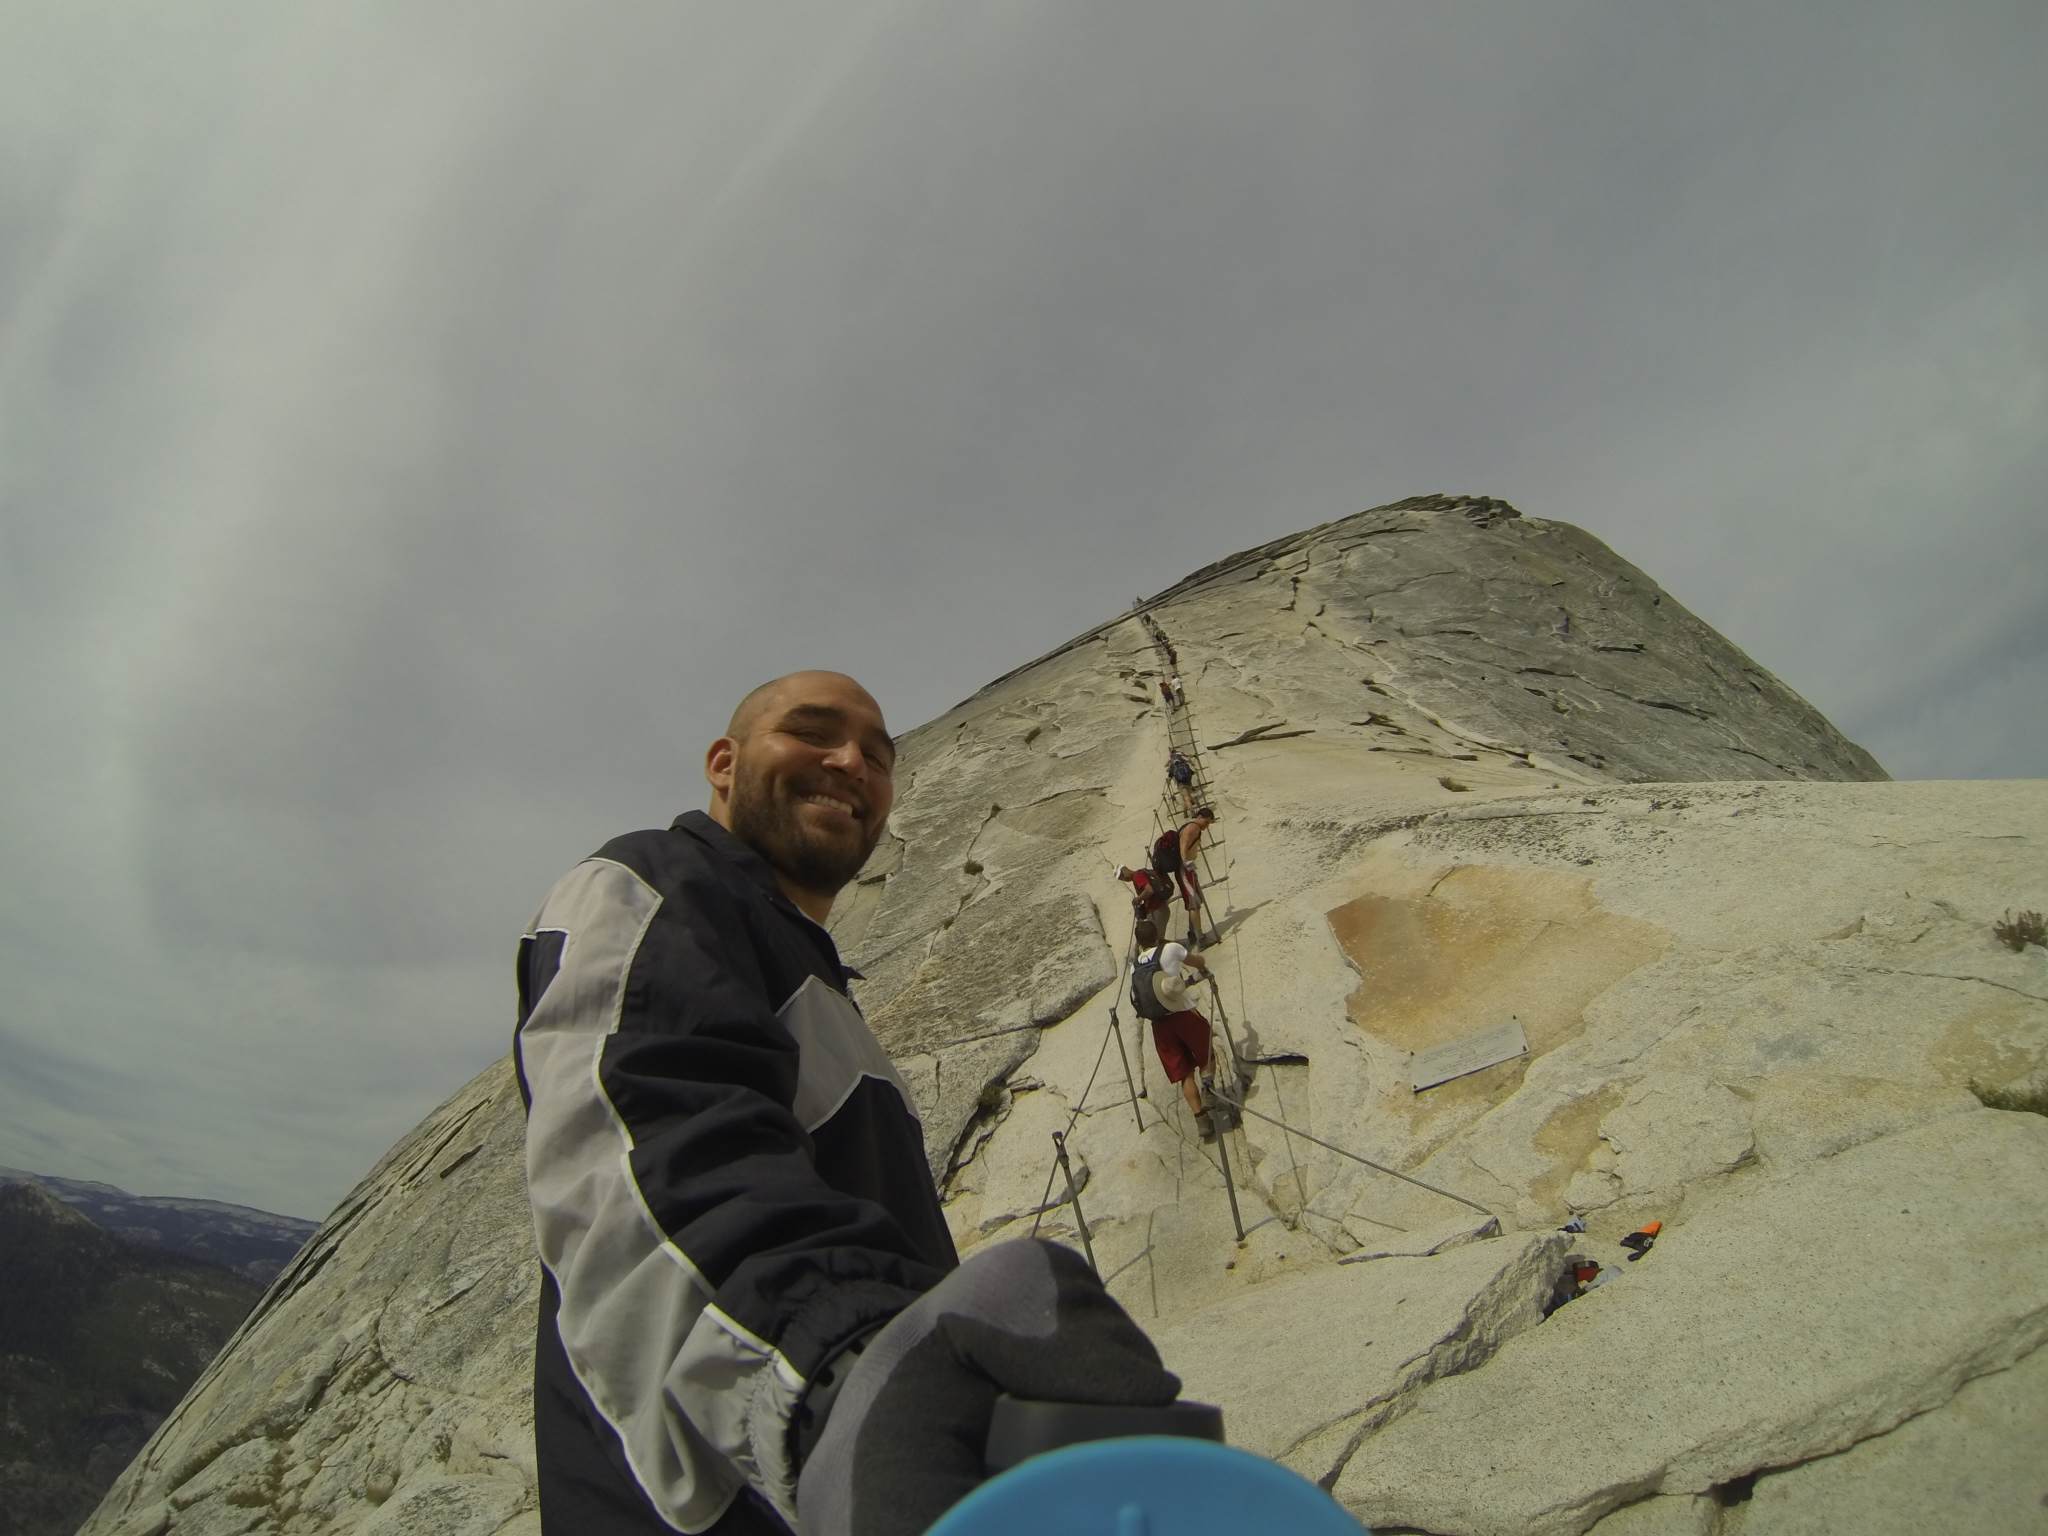 Climbing half dome in Yosemite